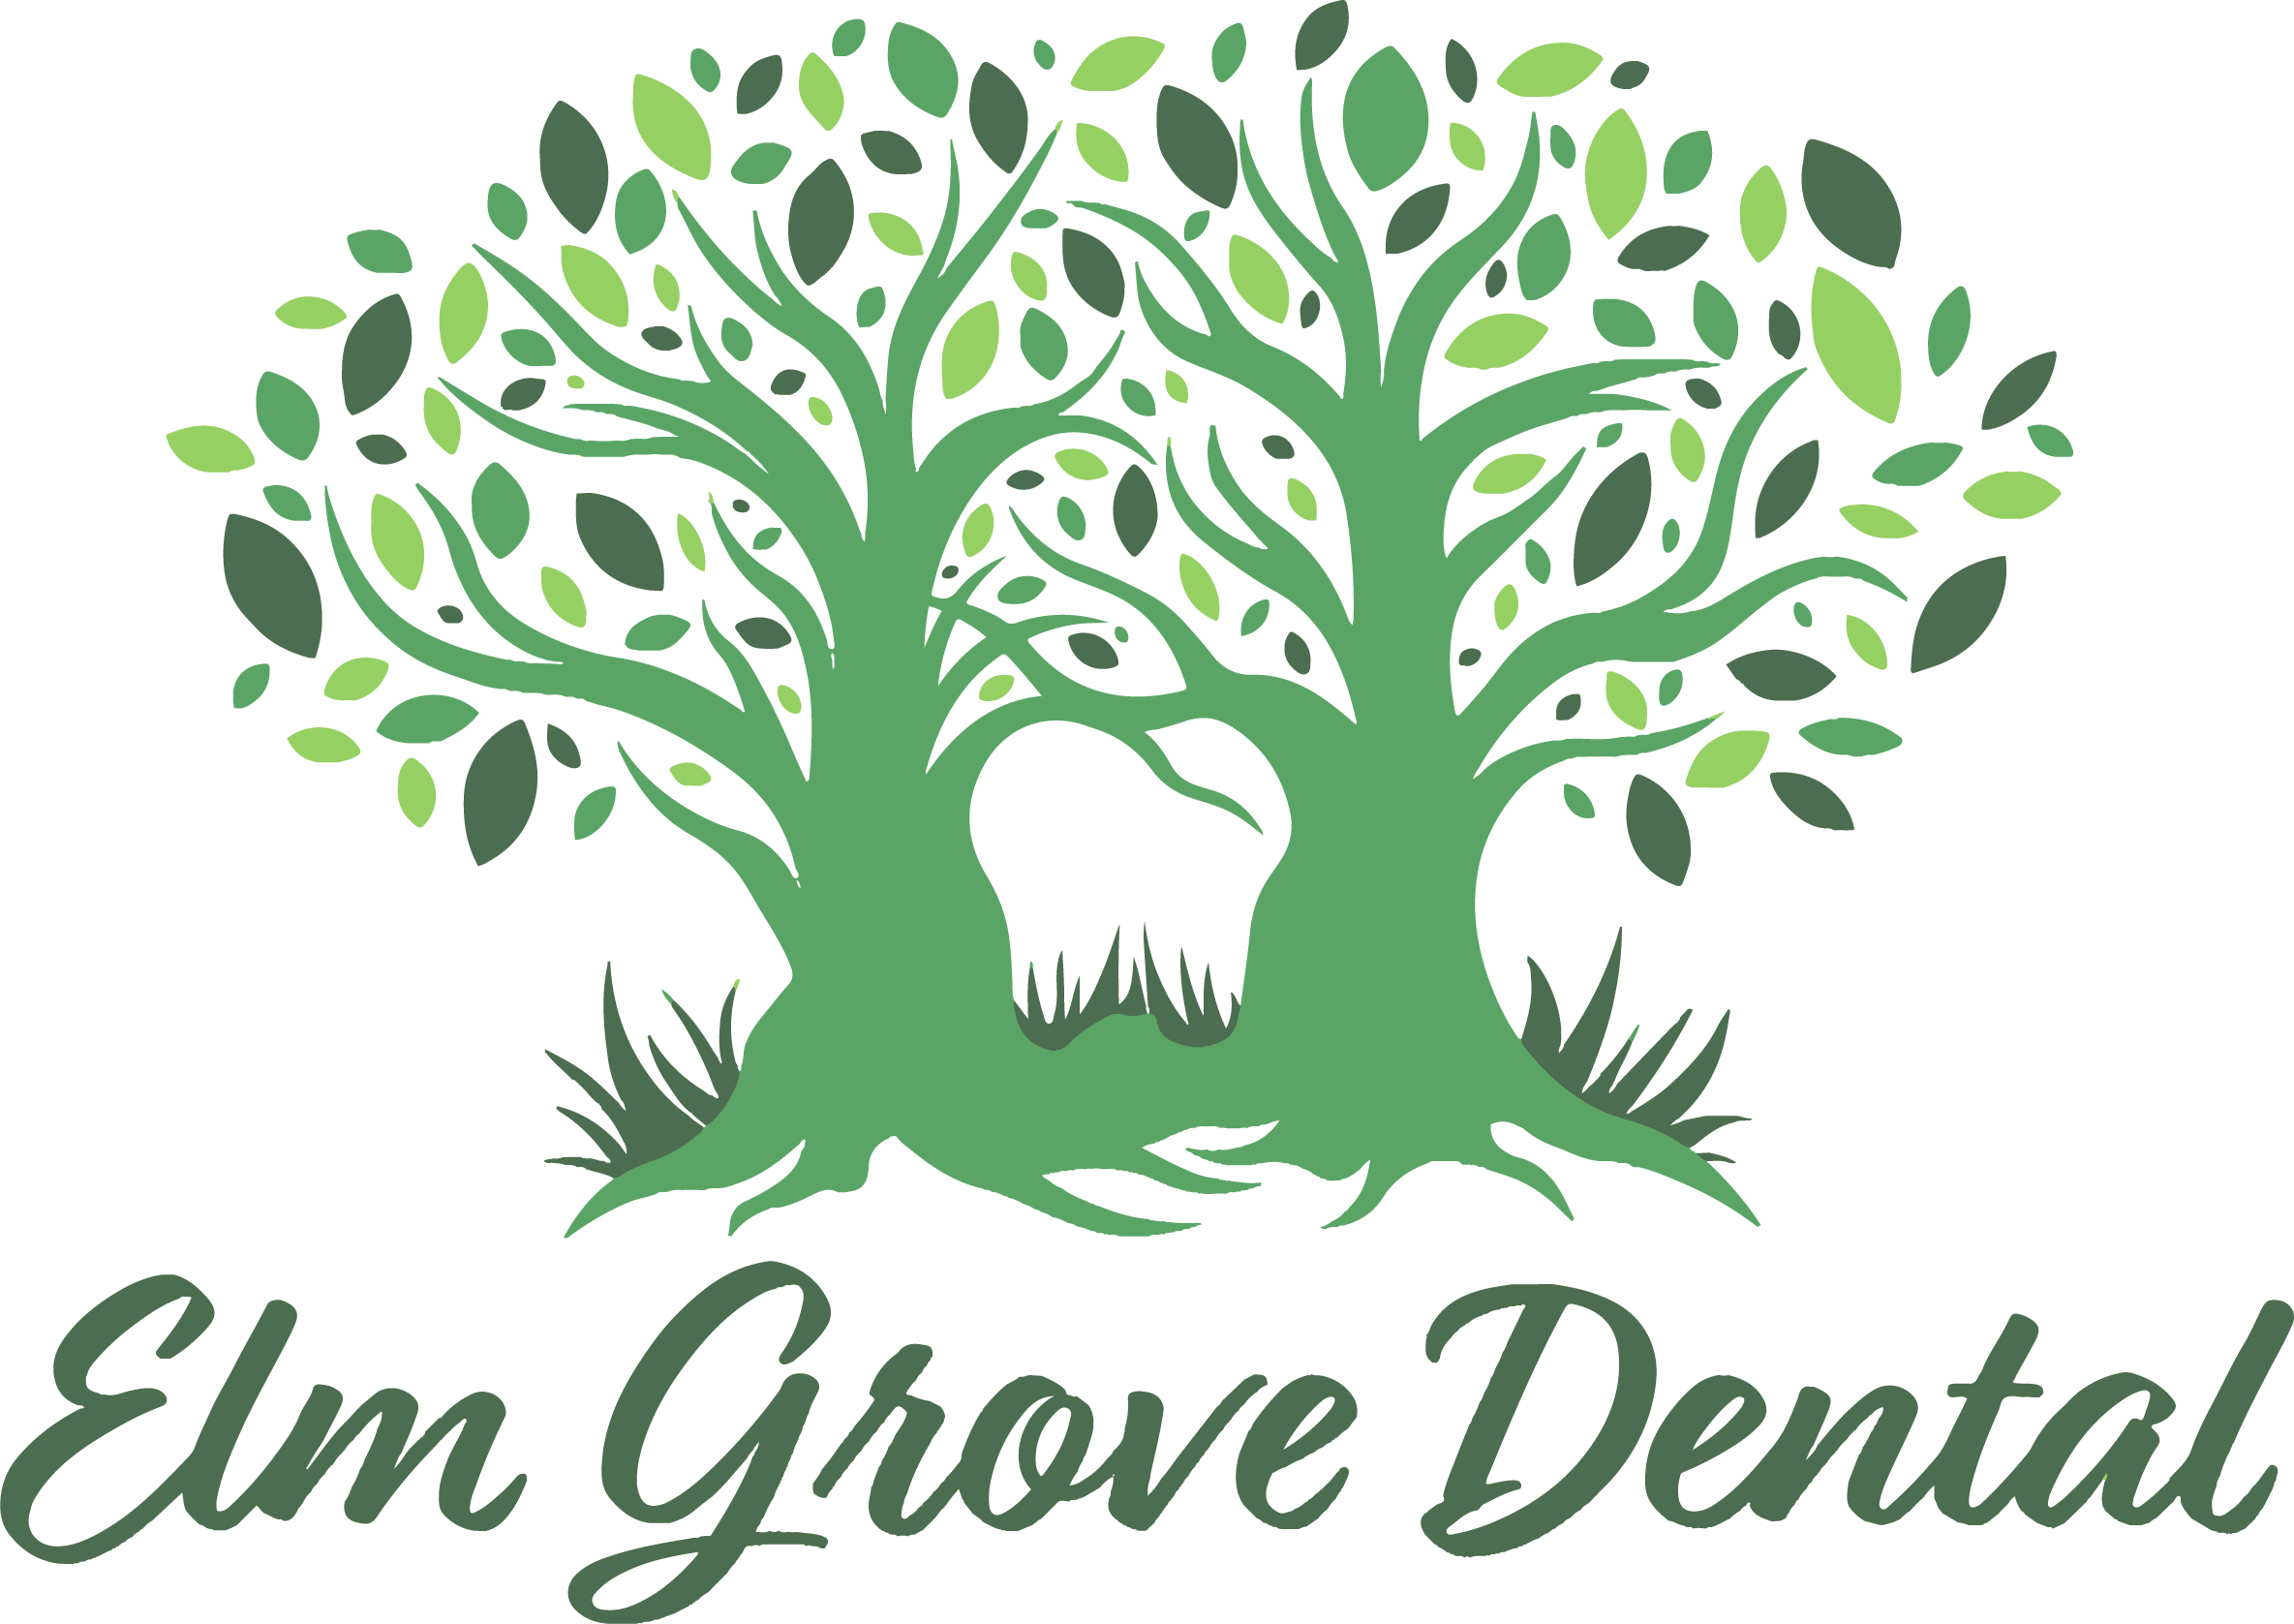 Elm Grove Dental